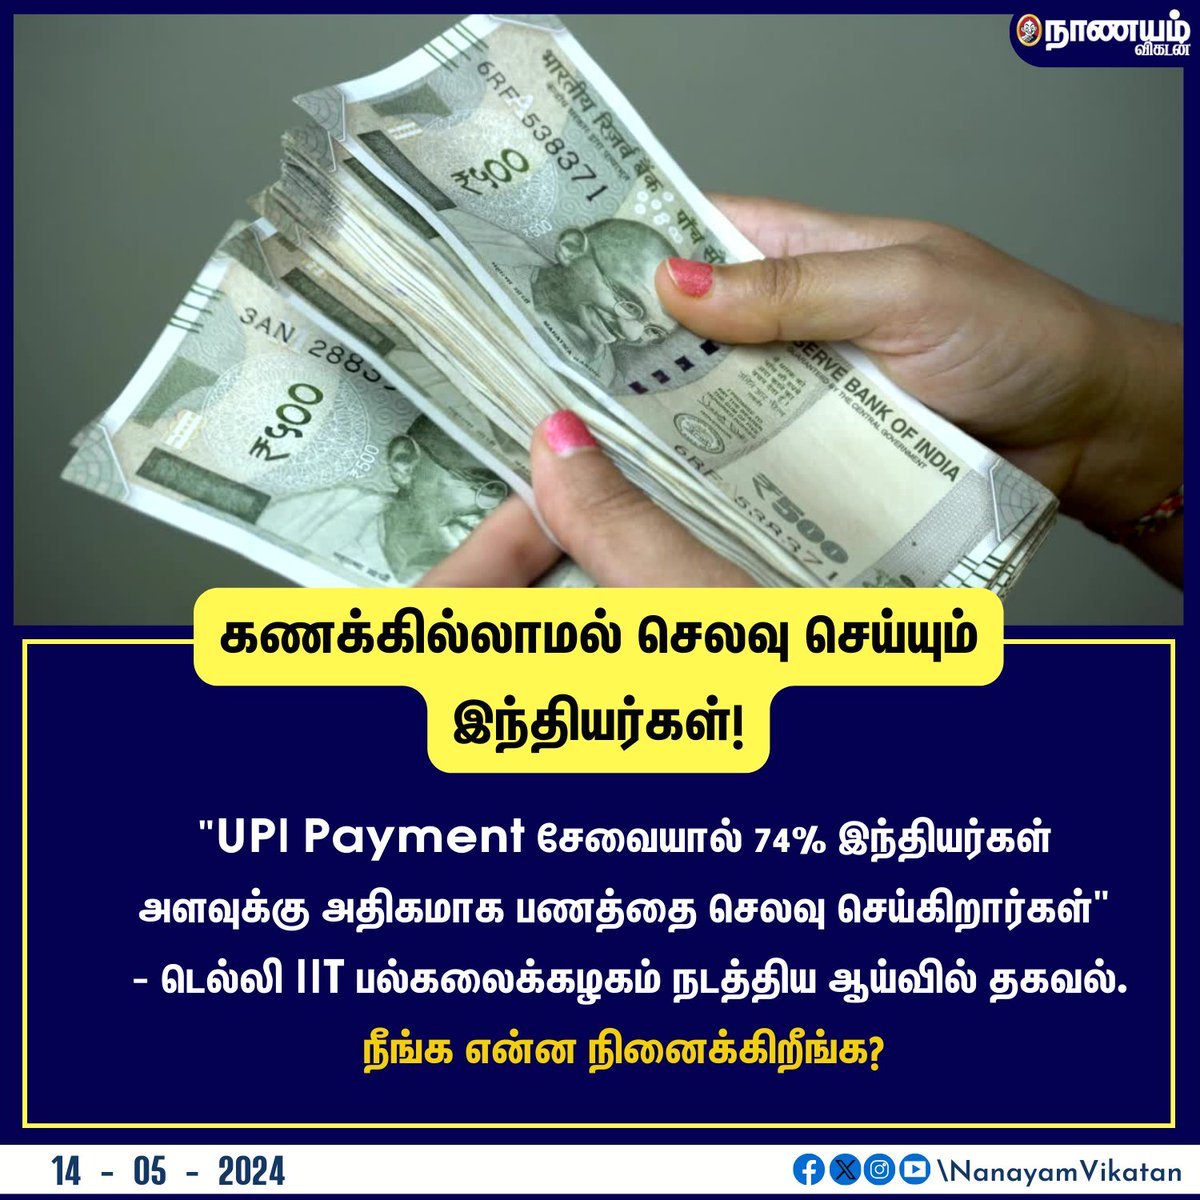 கணக்கில்லாமல் செலவு செய்யும் இந்தியர்கள்! #money #UPI #indian